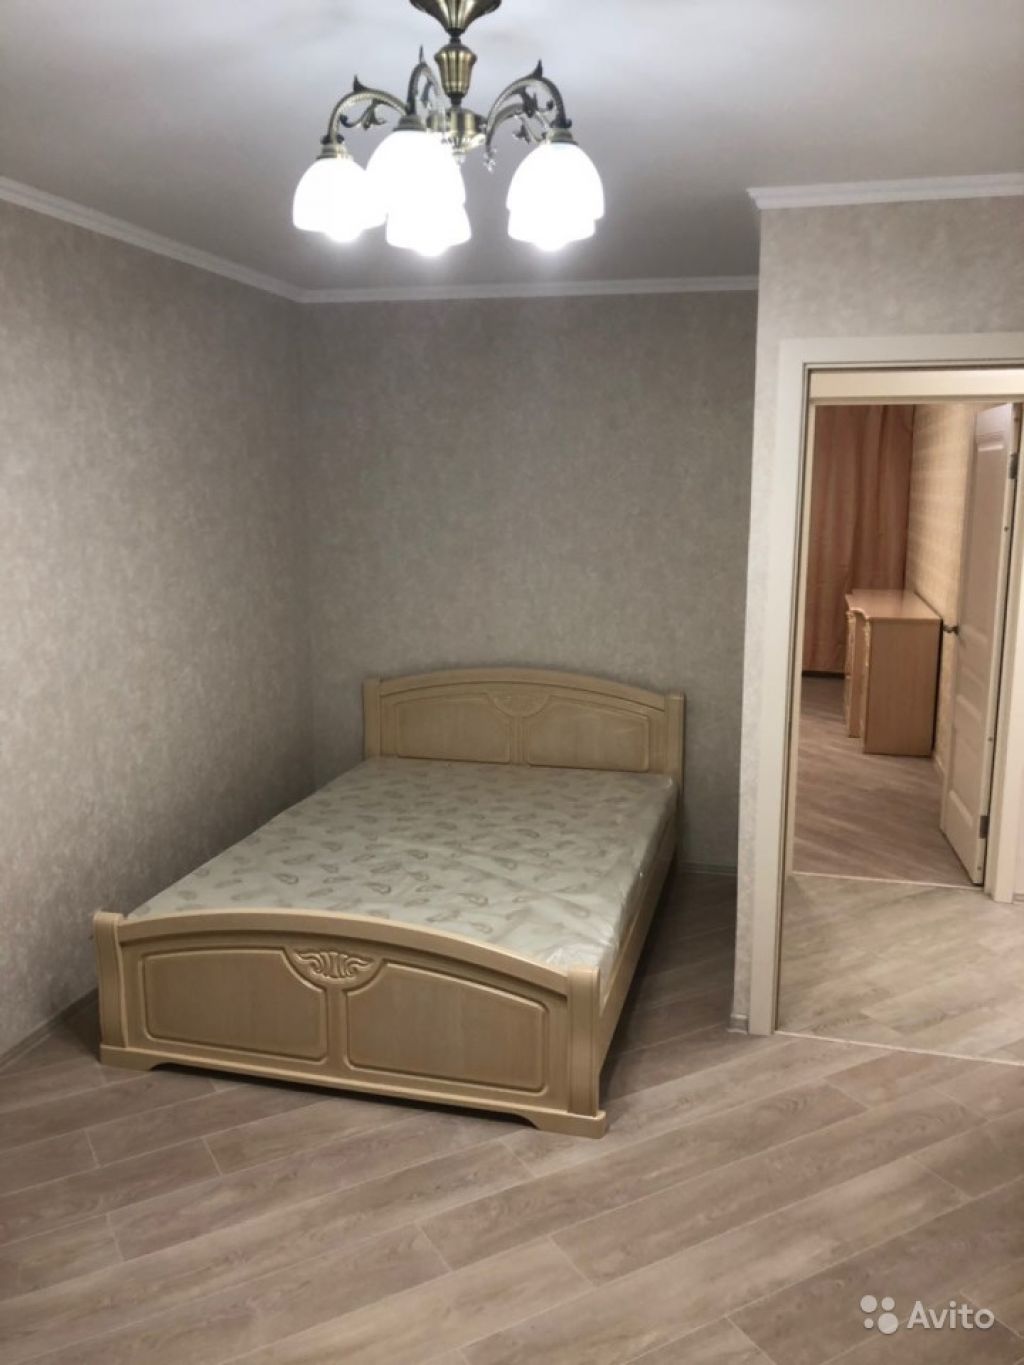 Сдам квартиру 3-к квартира 64 м² на 4 этаже 9-этажного панельного дома в Москве. Фото 1